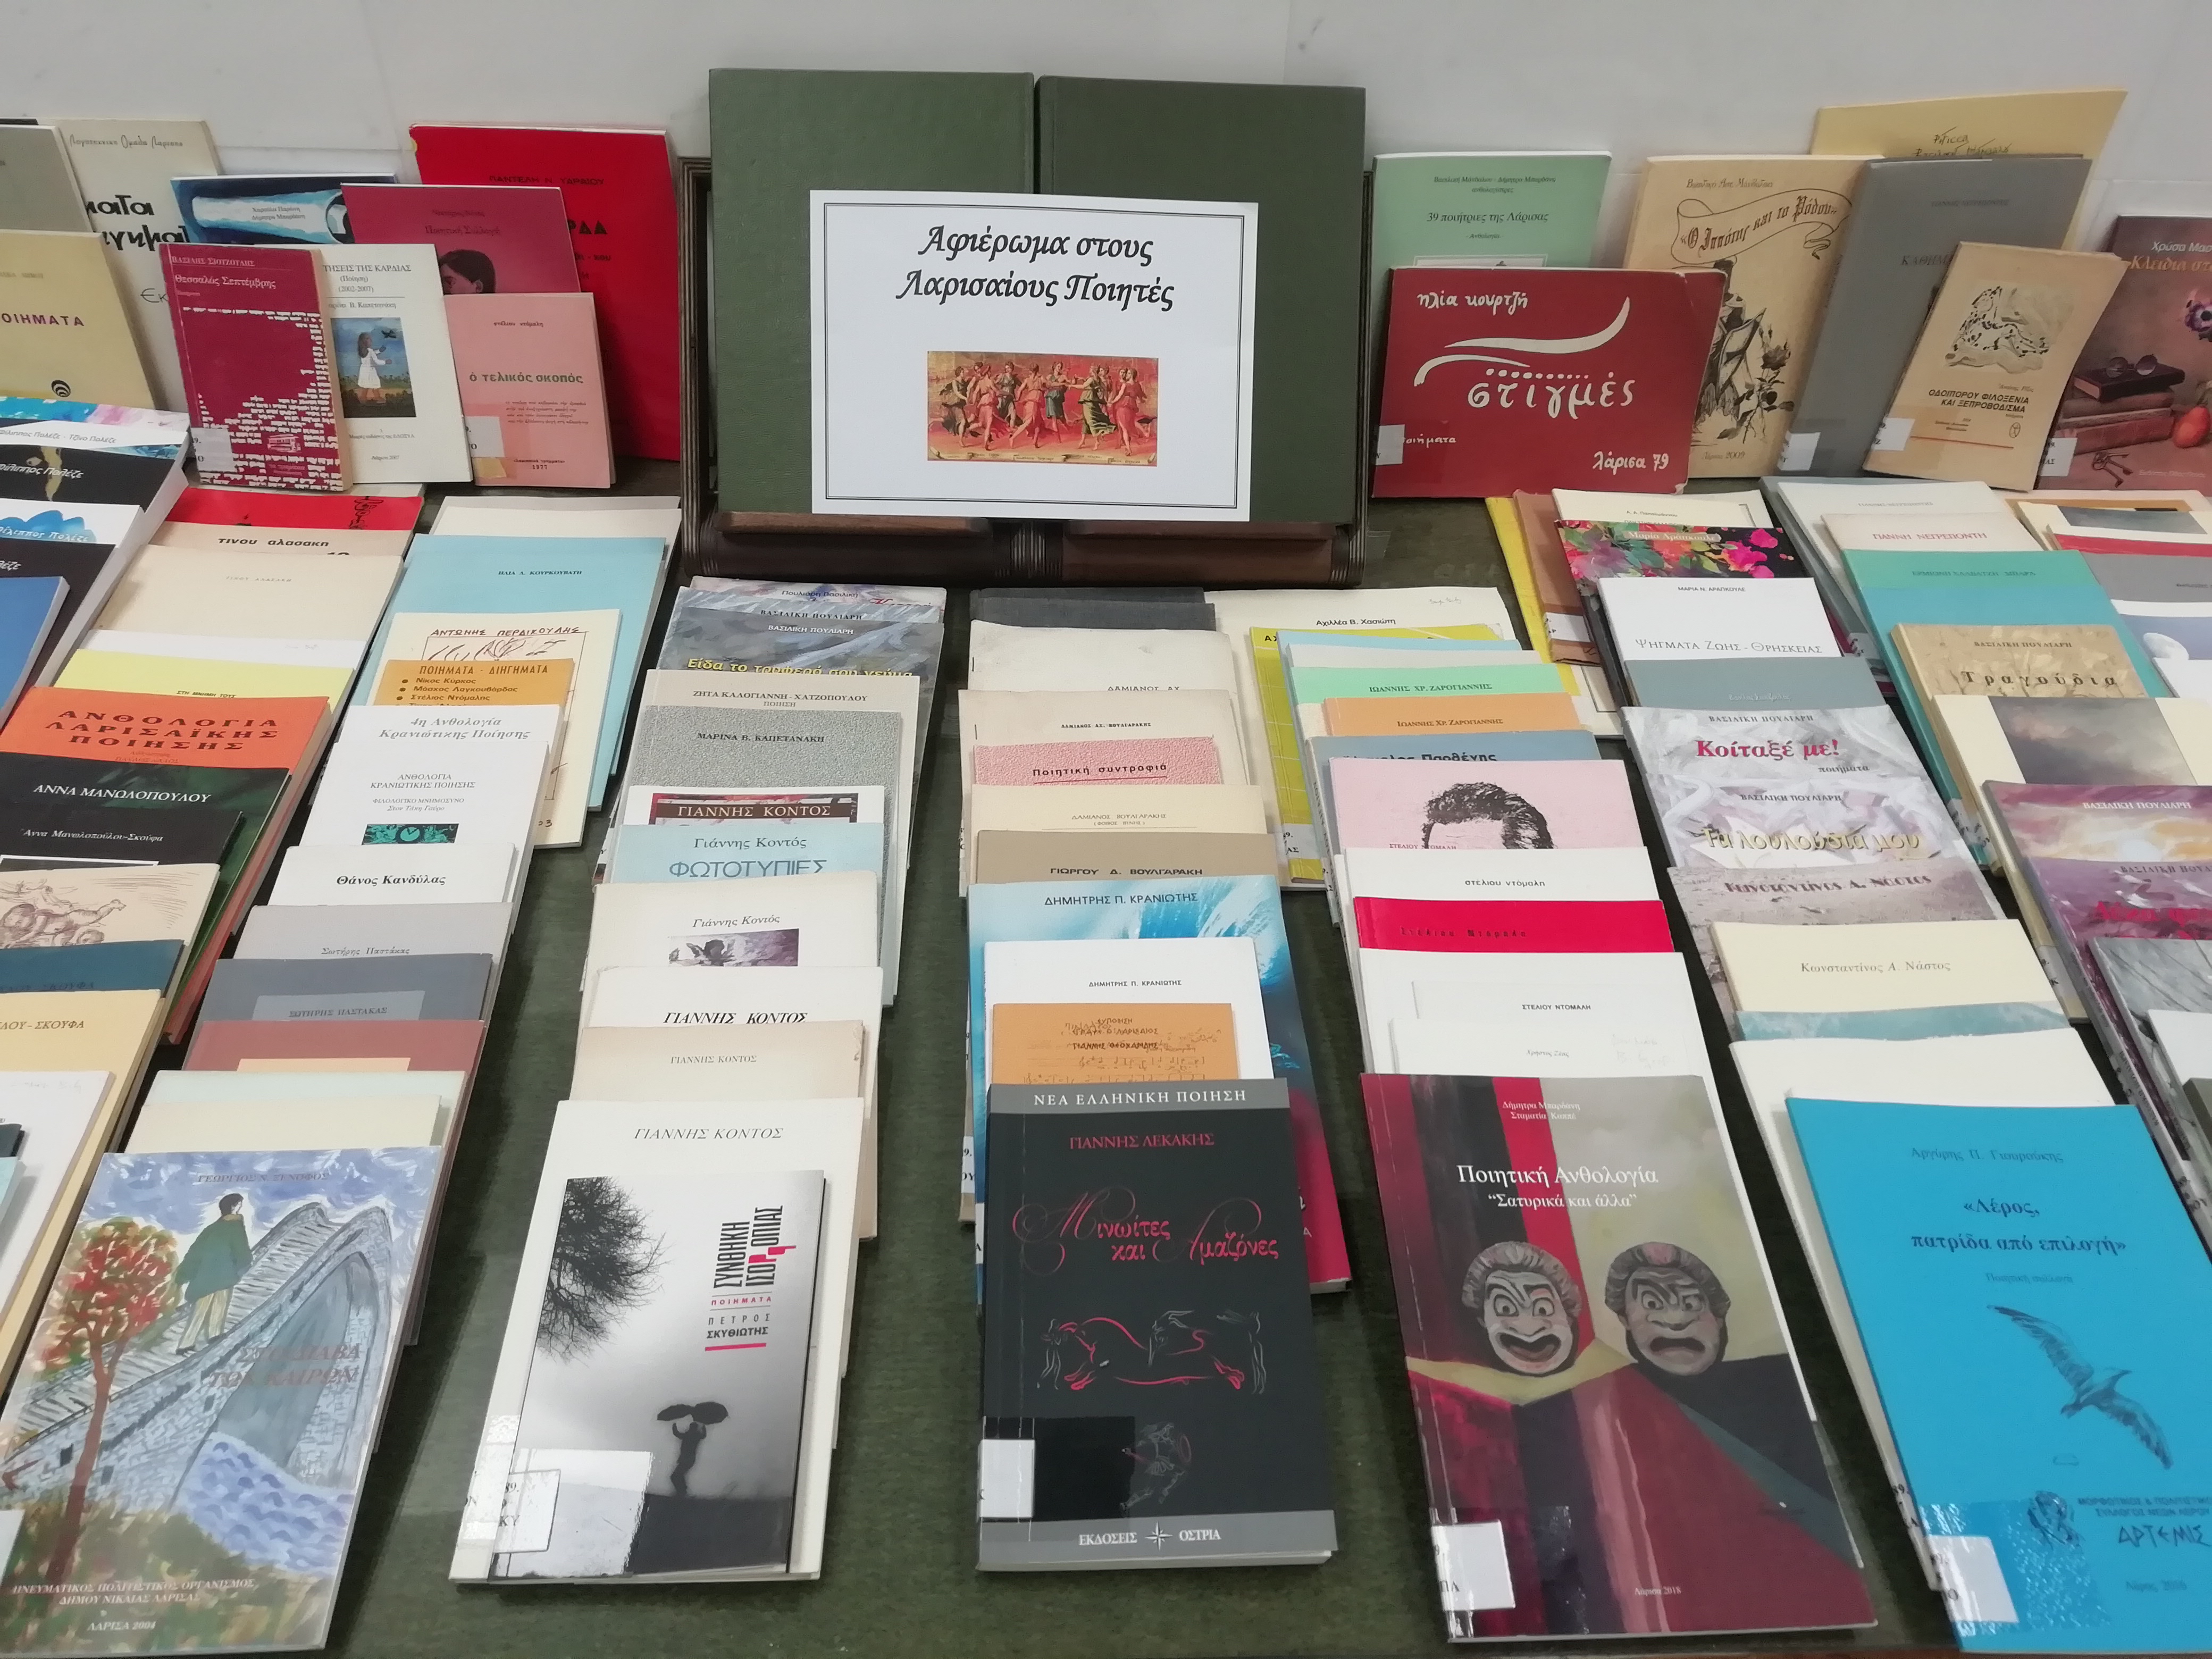 Δημόσια Κεντρική Βιβλιοθήκη Λάρισας: Αφιέρωμα στην ποίηση 